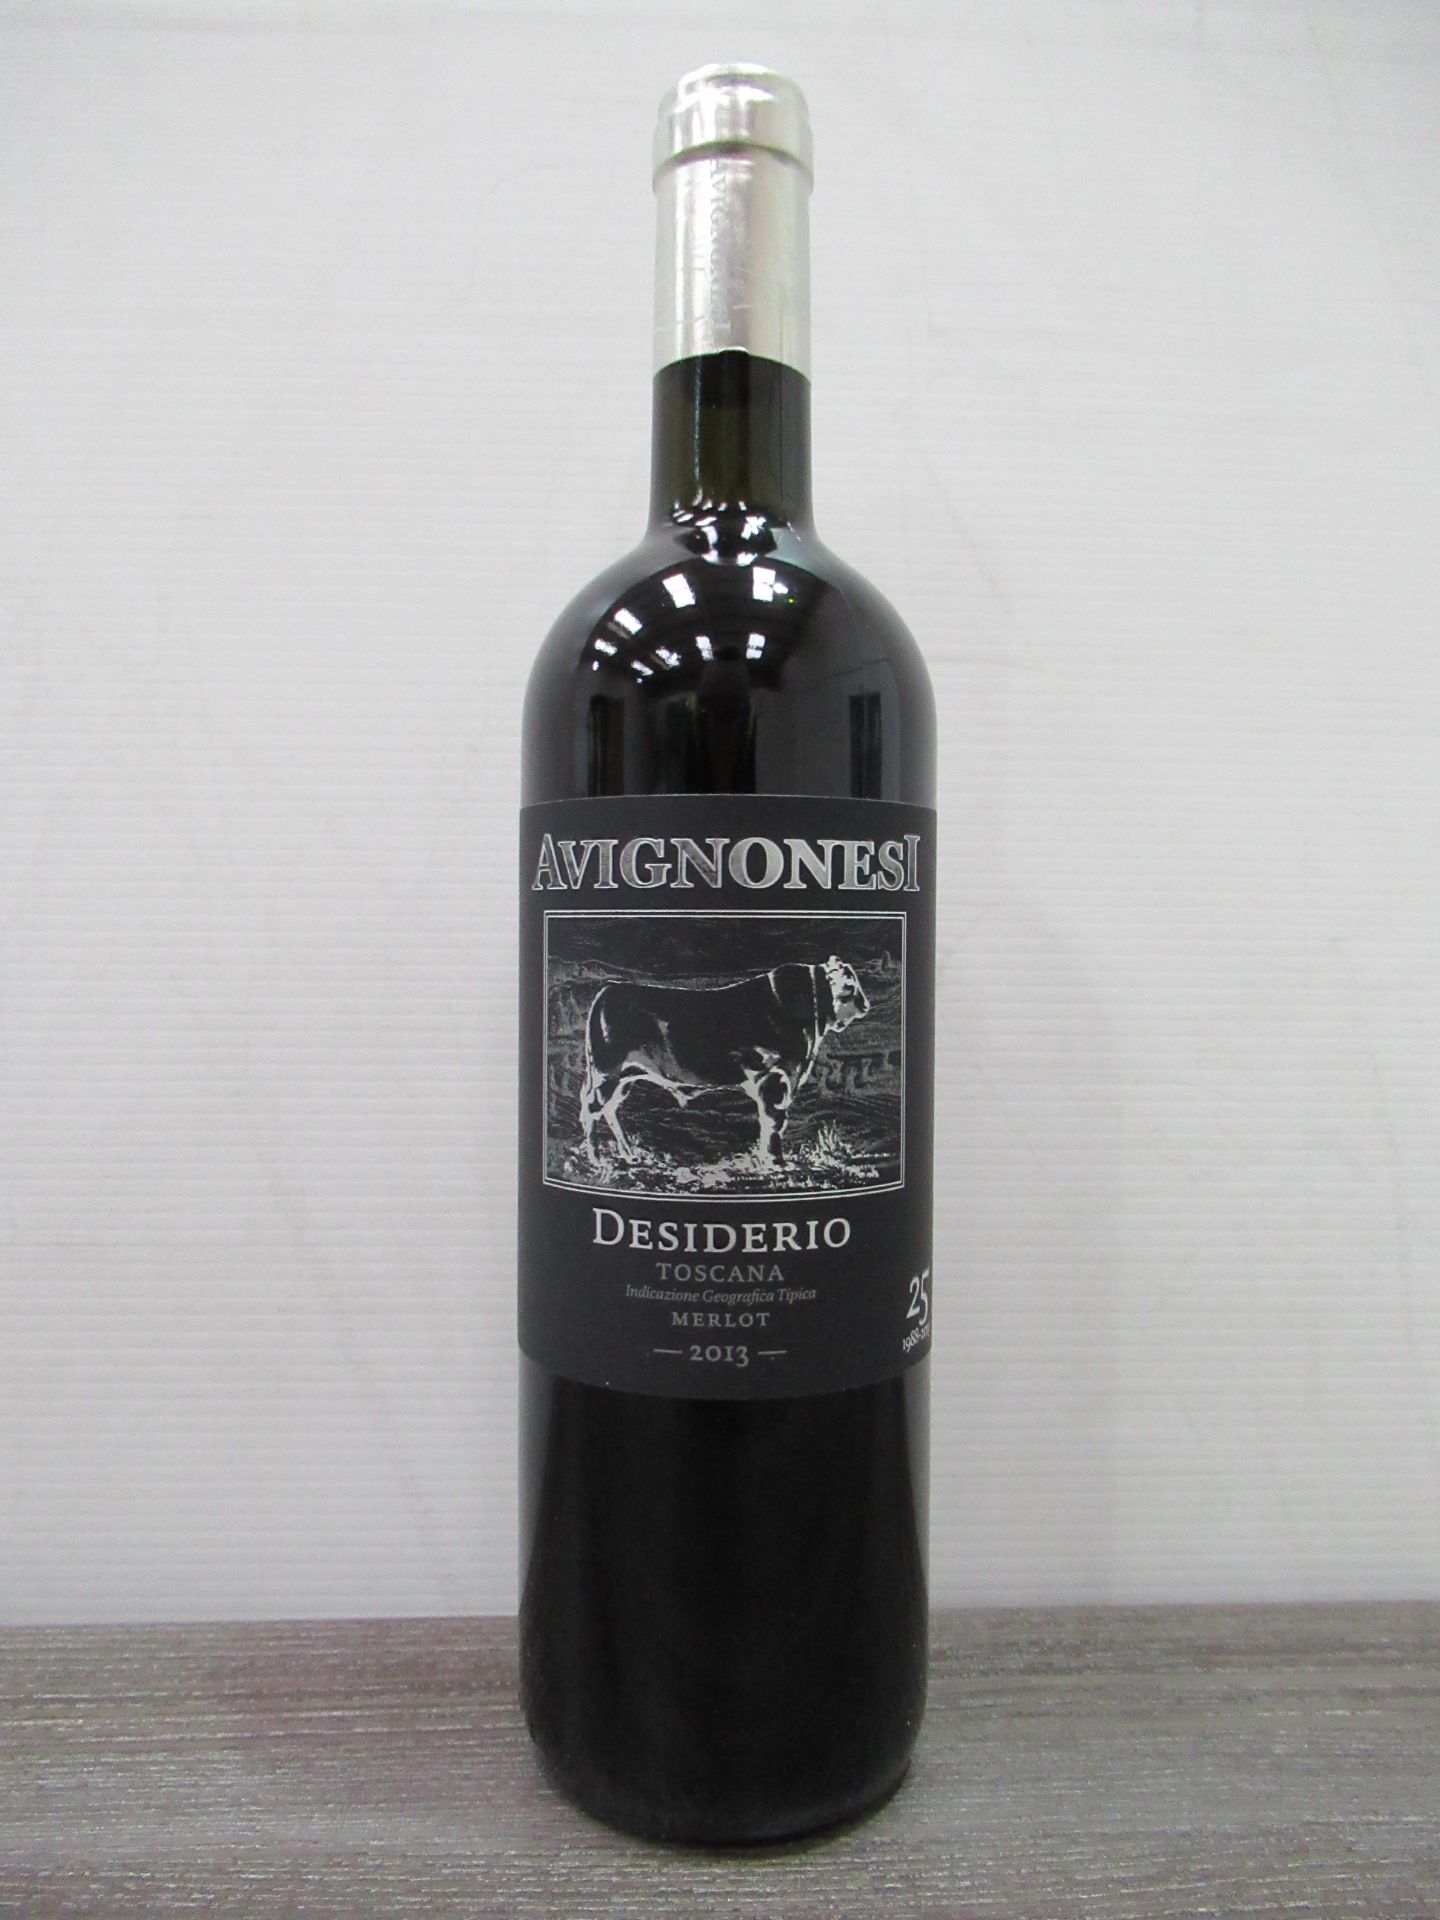 6 x Bottles of Avignonesi, Desiderio, Toscana Merlot 2013